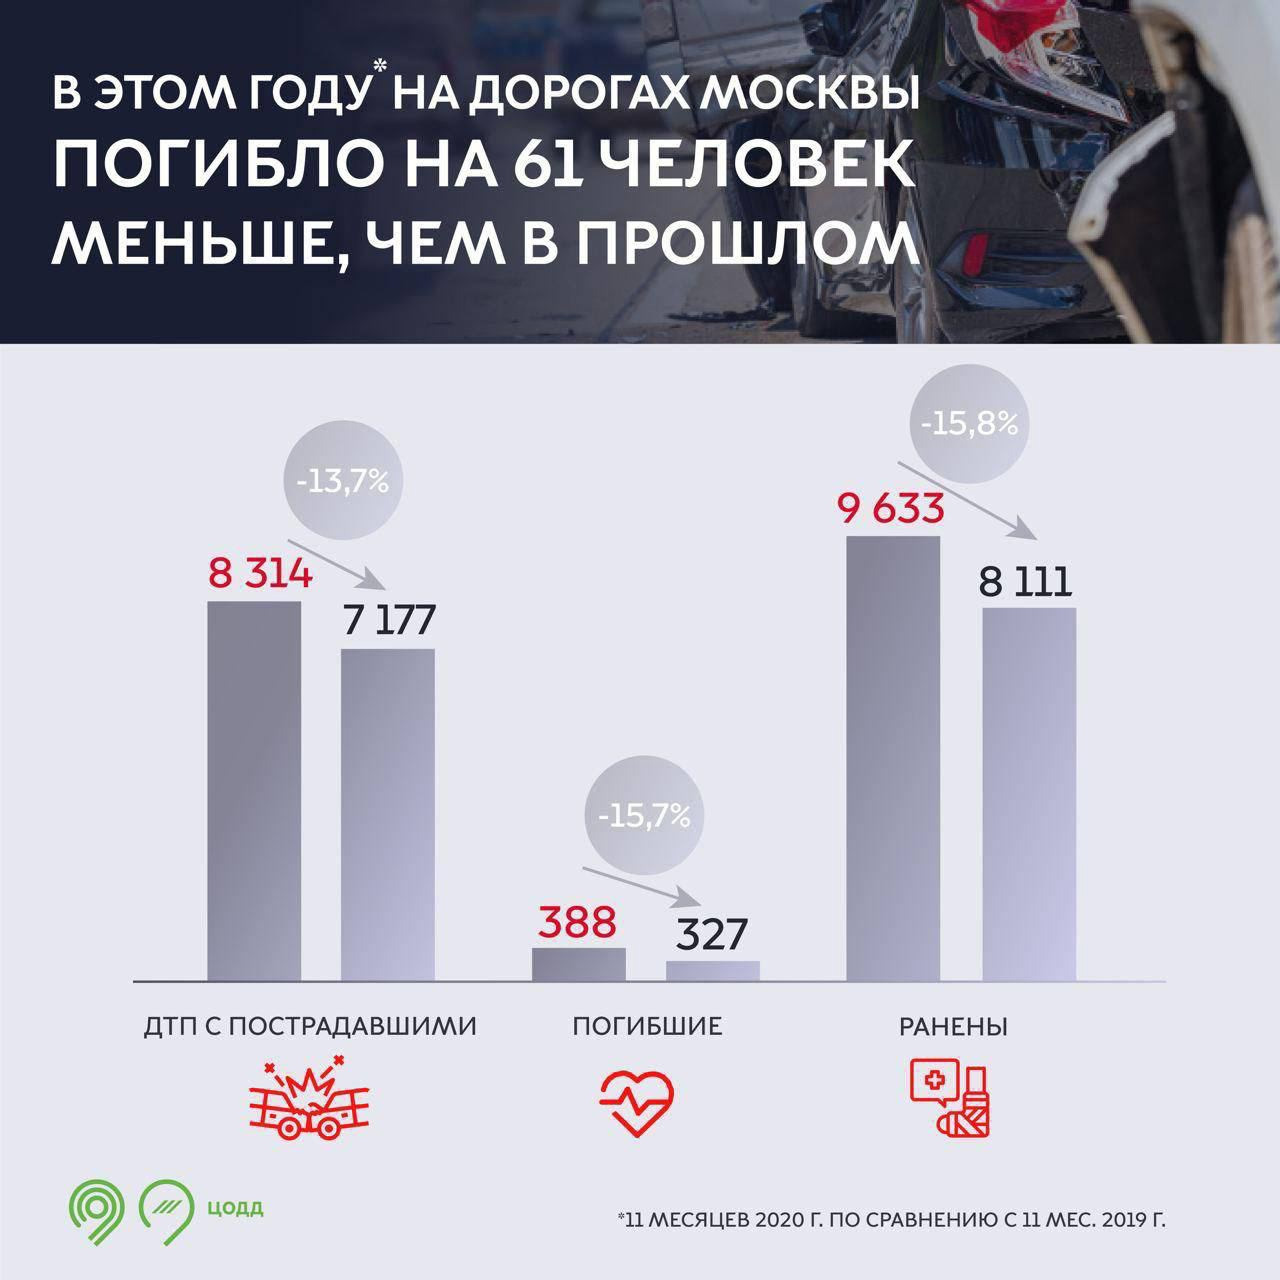 Власти Москвы посчитали количество ДТП в 2020 году